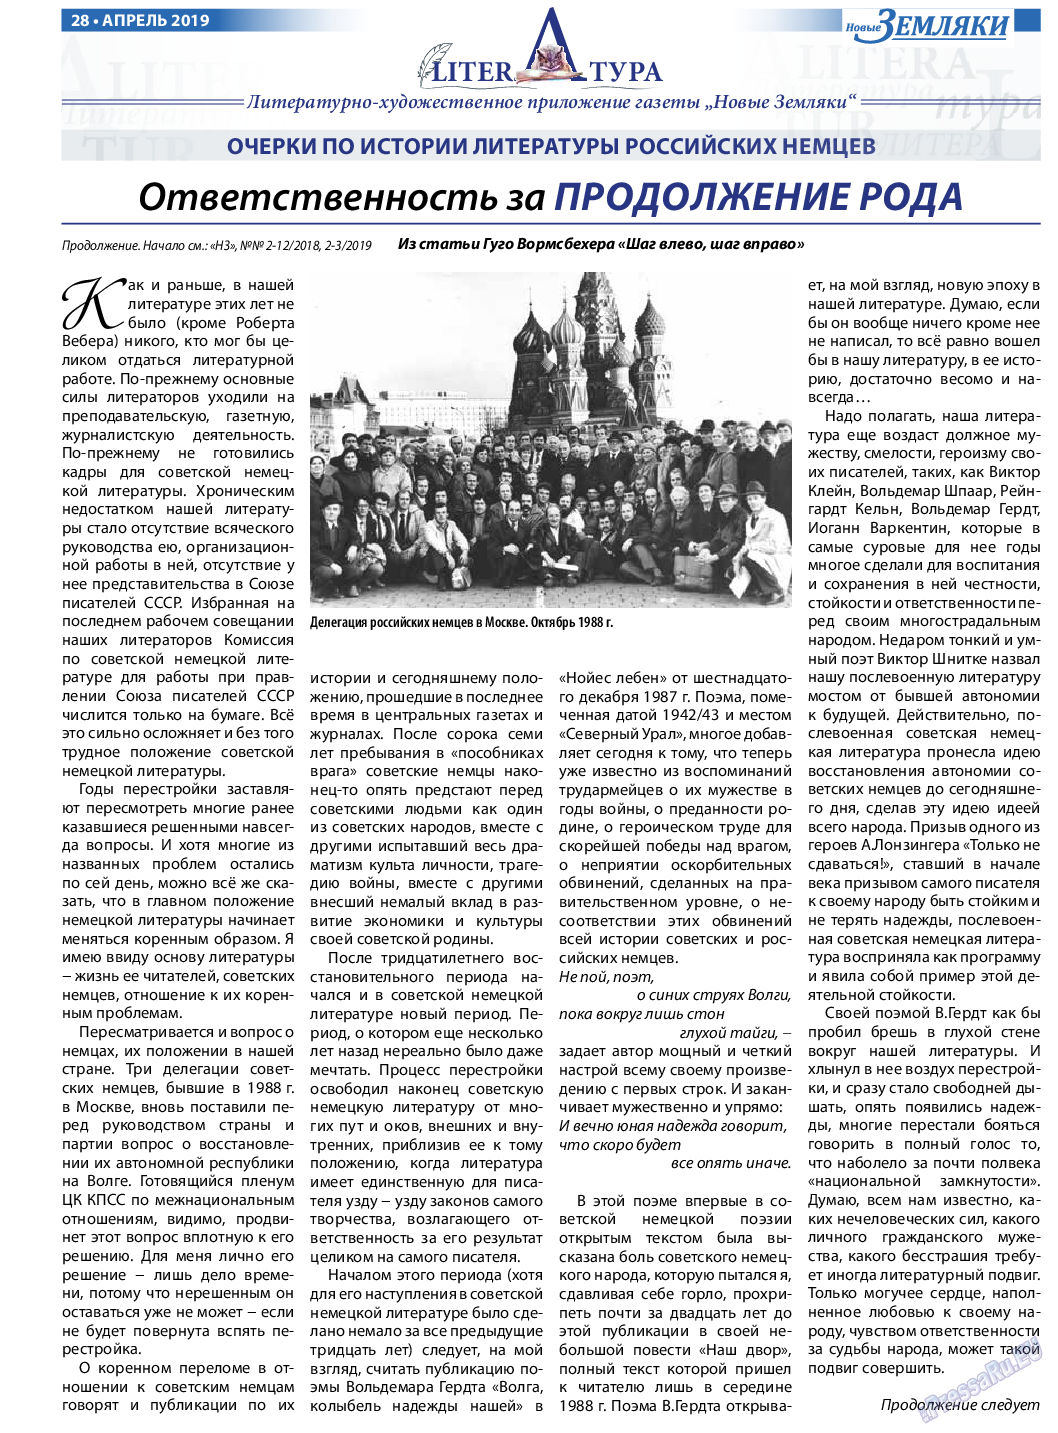 Новые Земляки (газета). 2019 год, номер 4, стр. 28